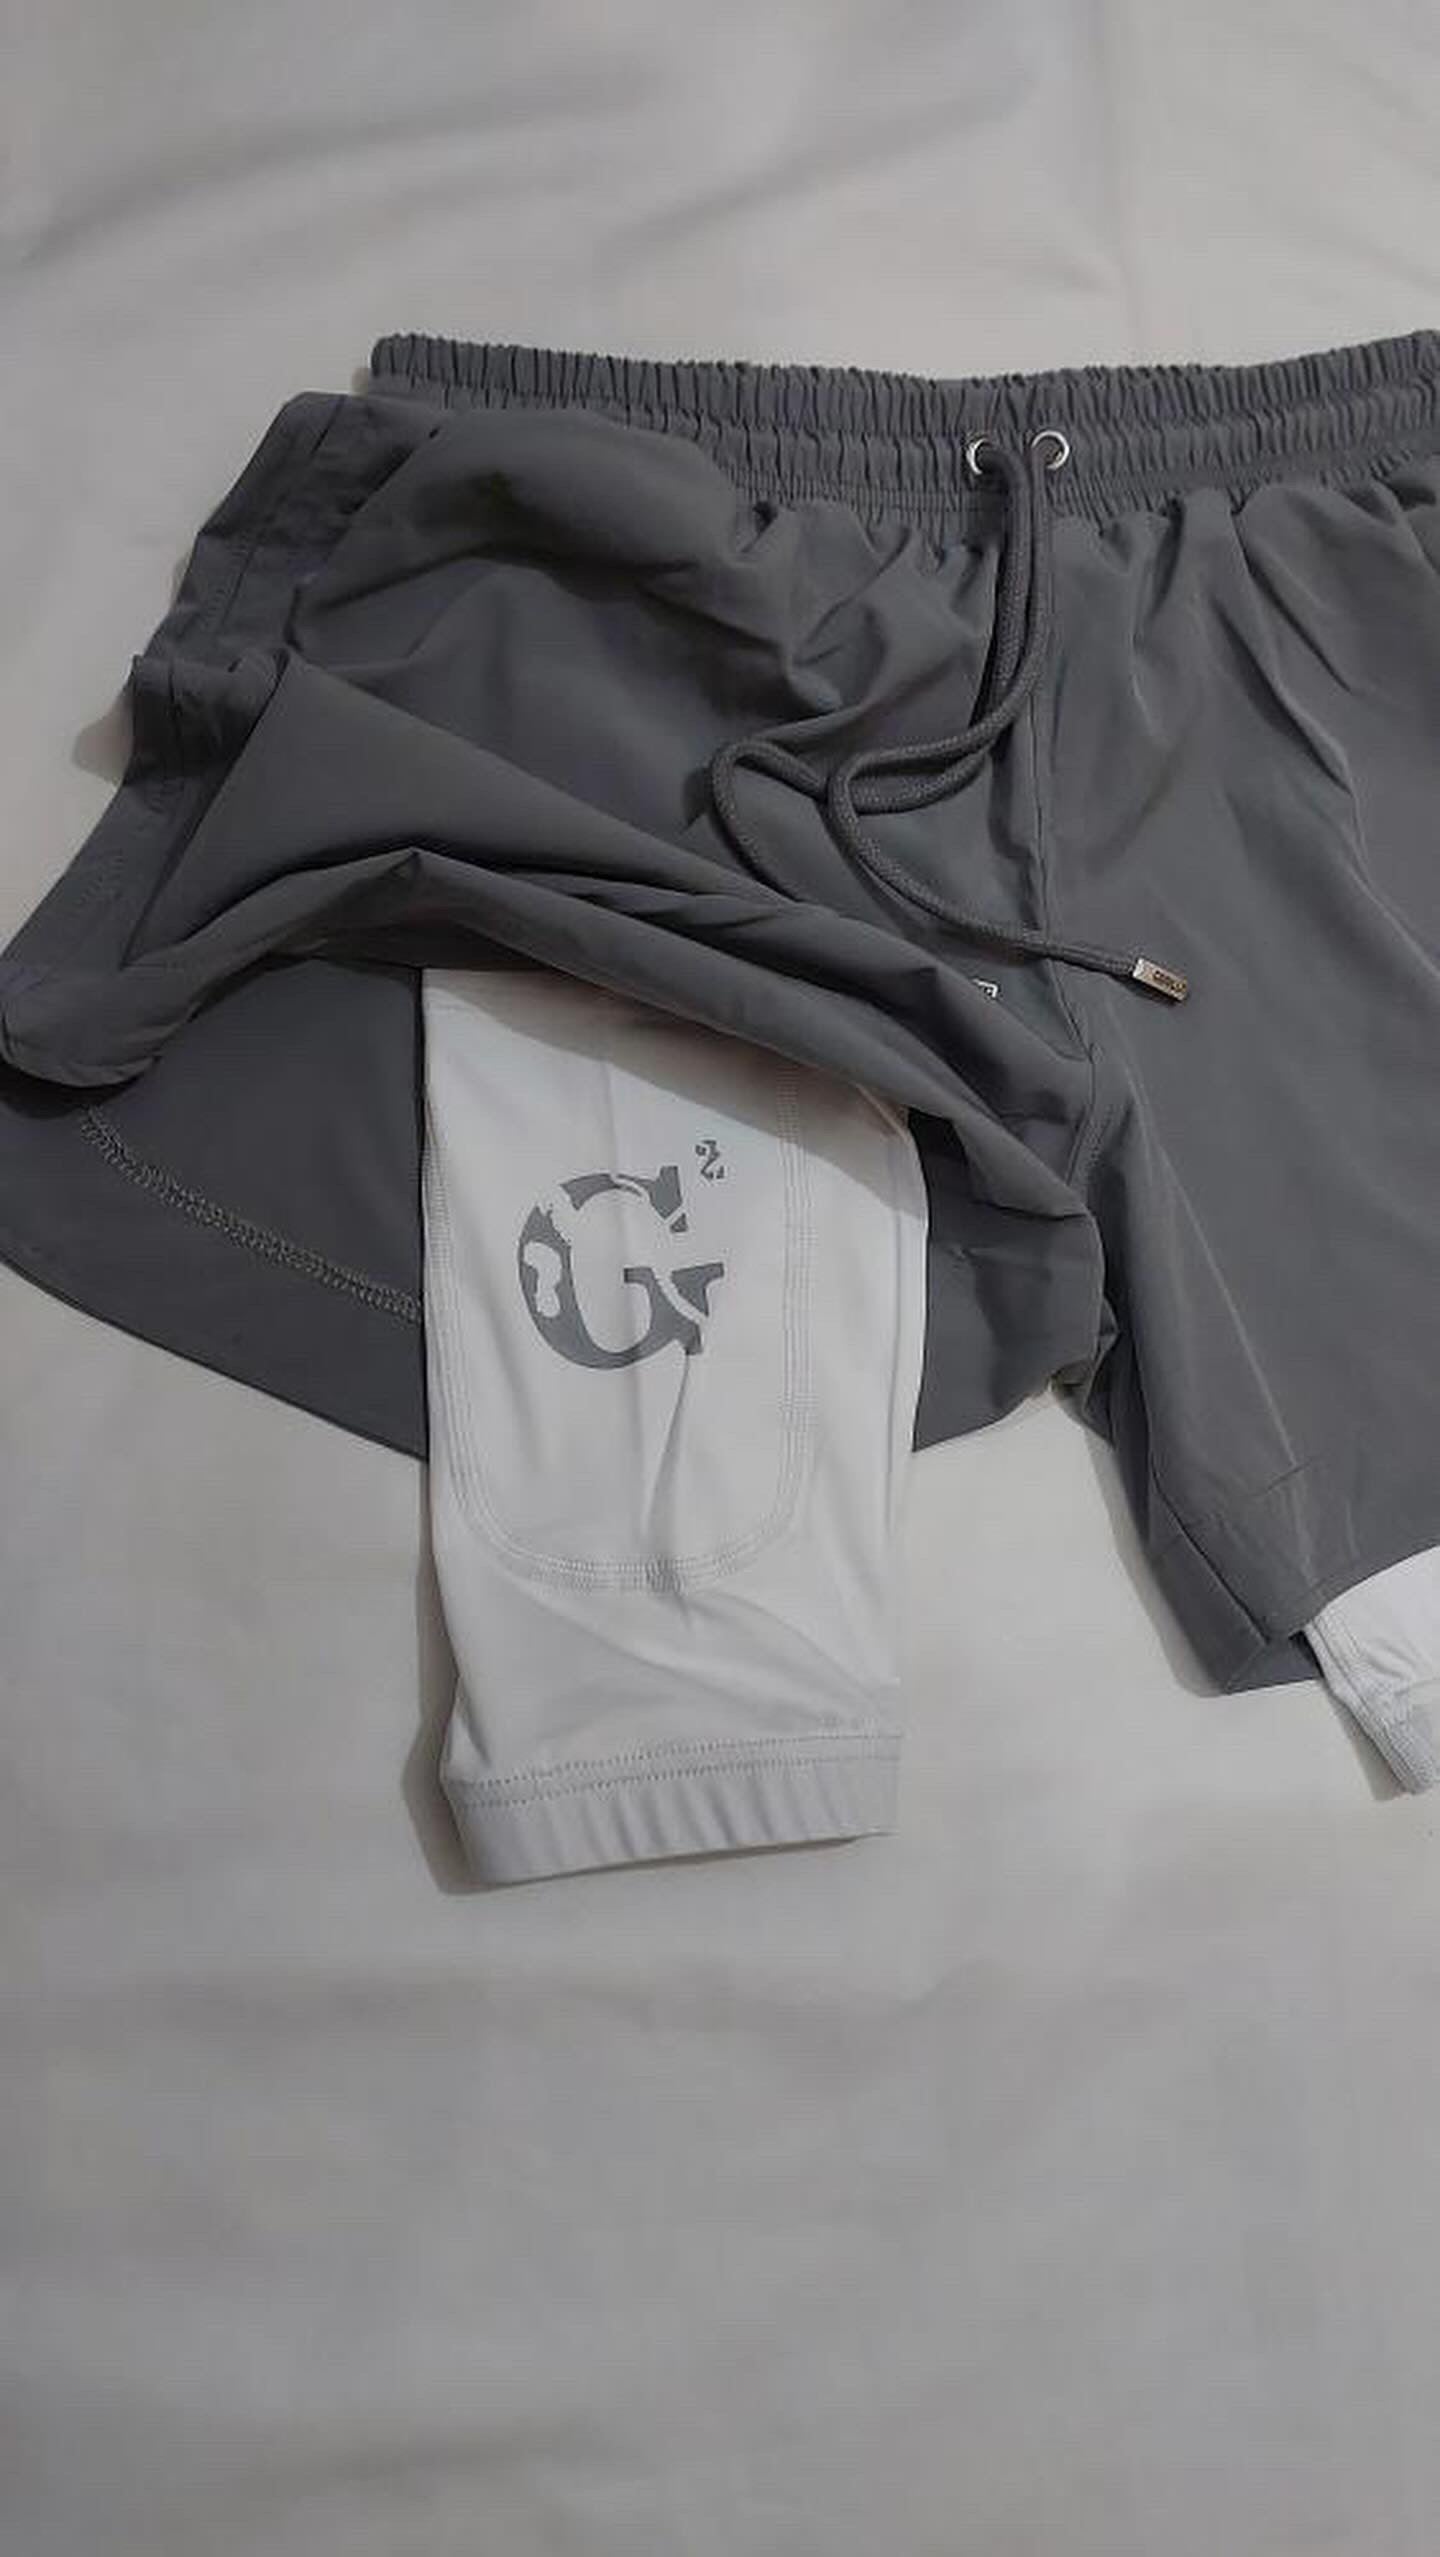 G2 Grey/White Athletic Shorts